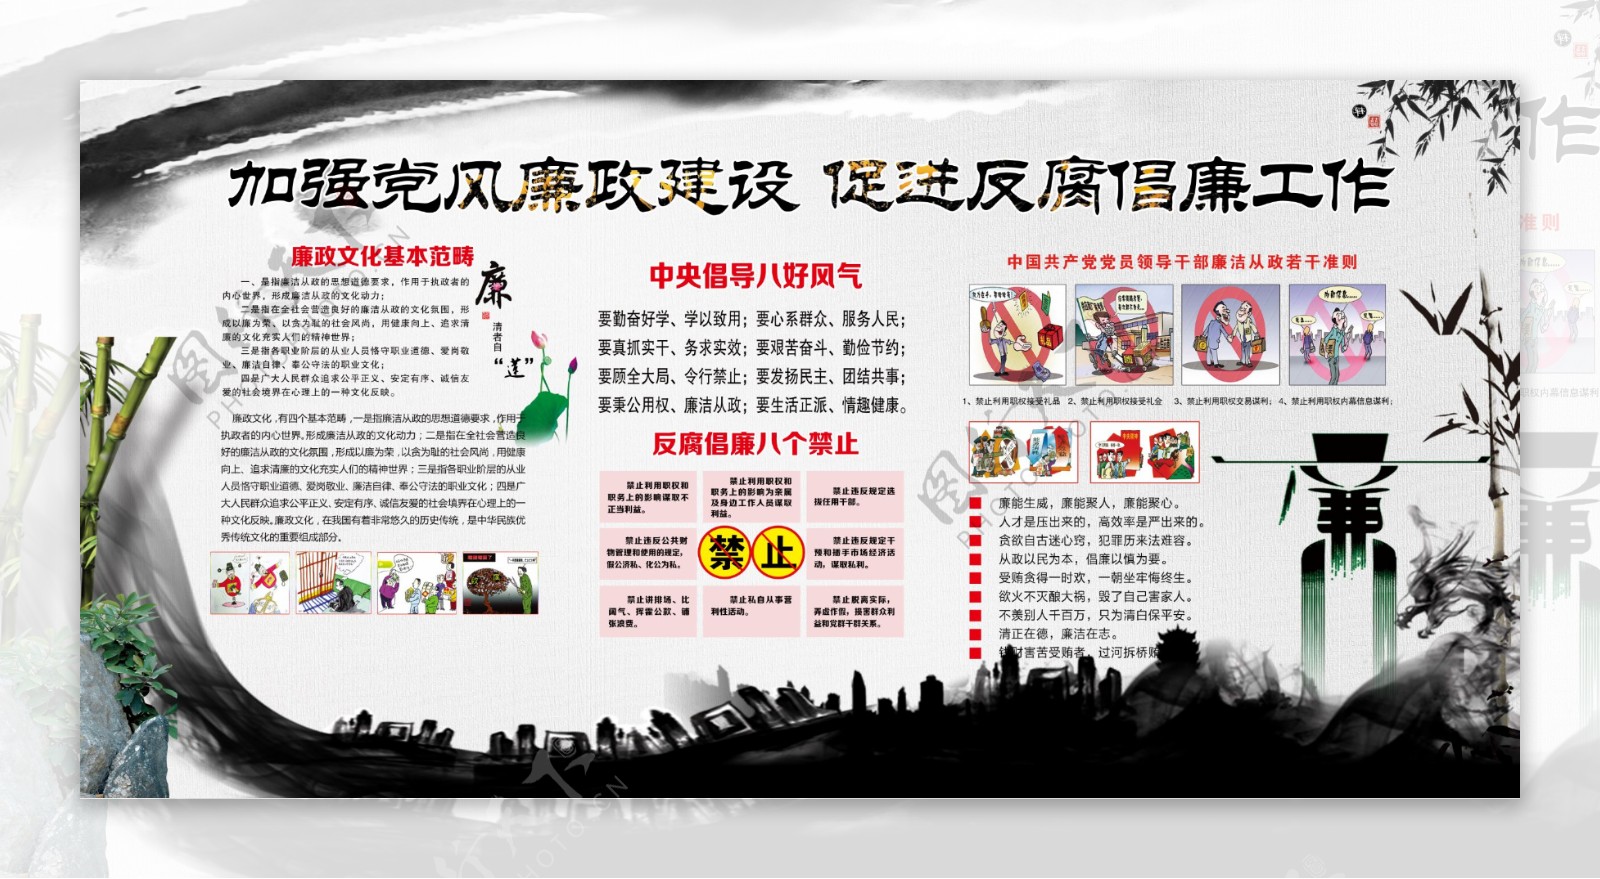 中国风反腐倡廉建设文化宣传双面展板